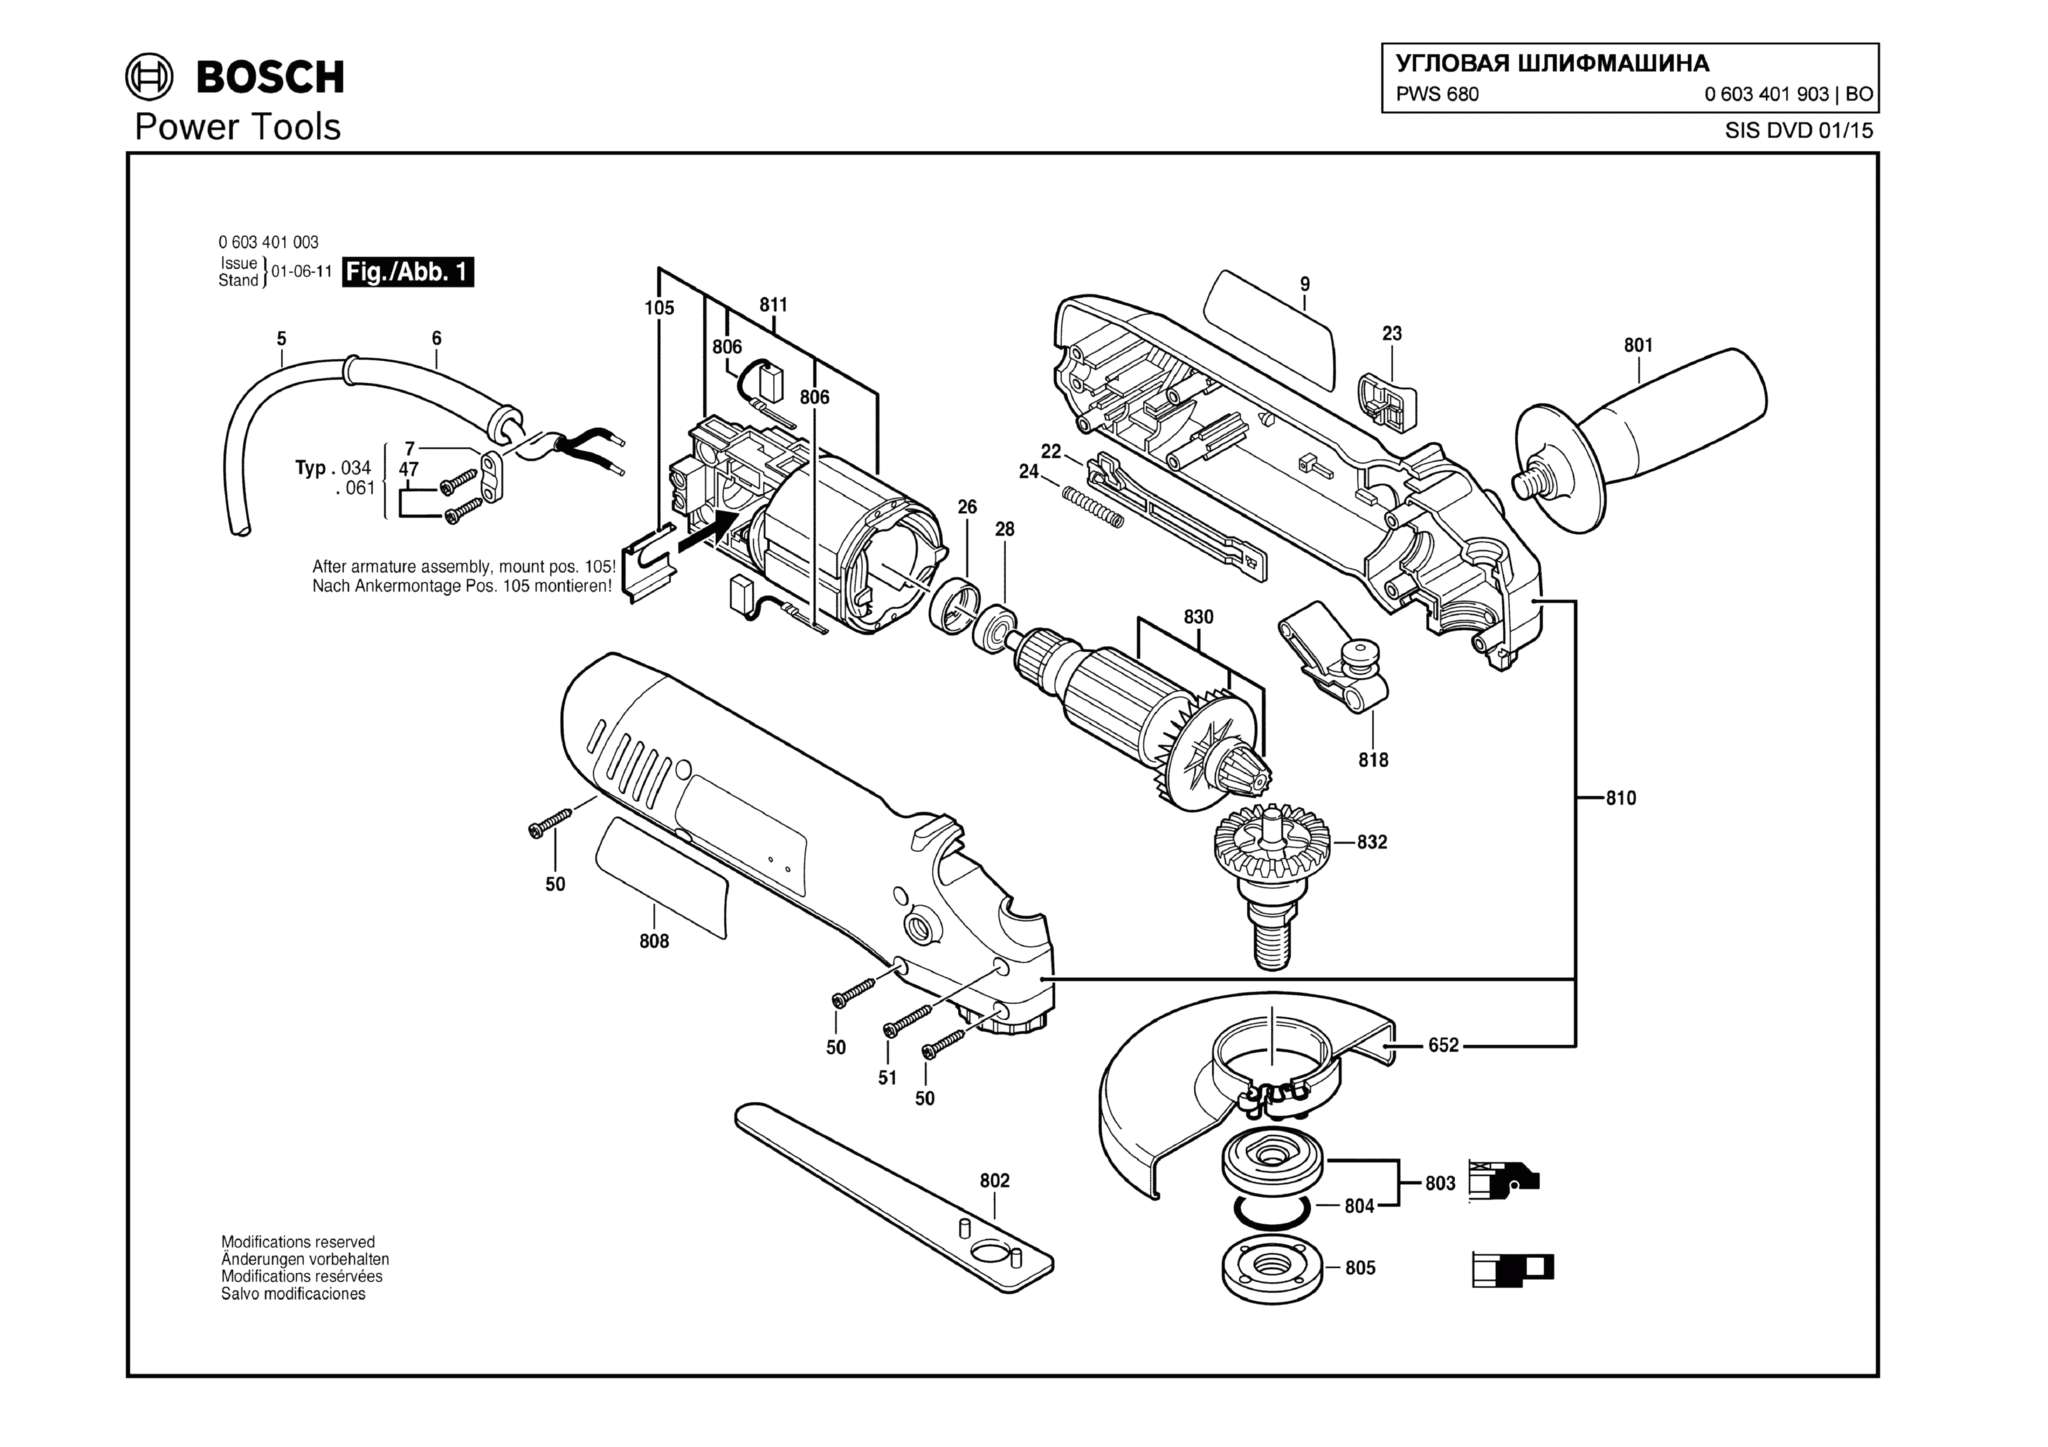 Запчасти, схема и деталировка Bosch PWS 680 (ТИП 0603401903)